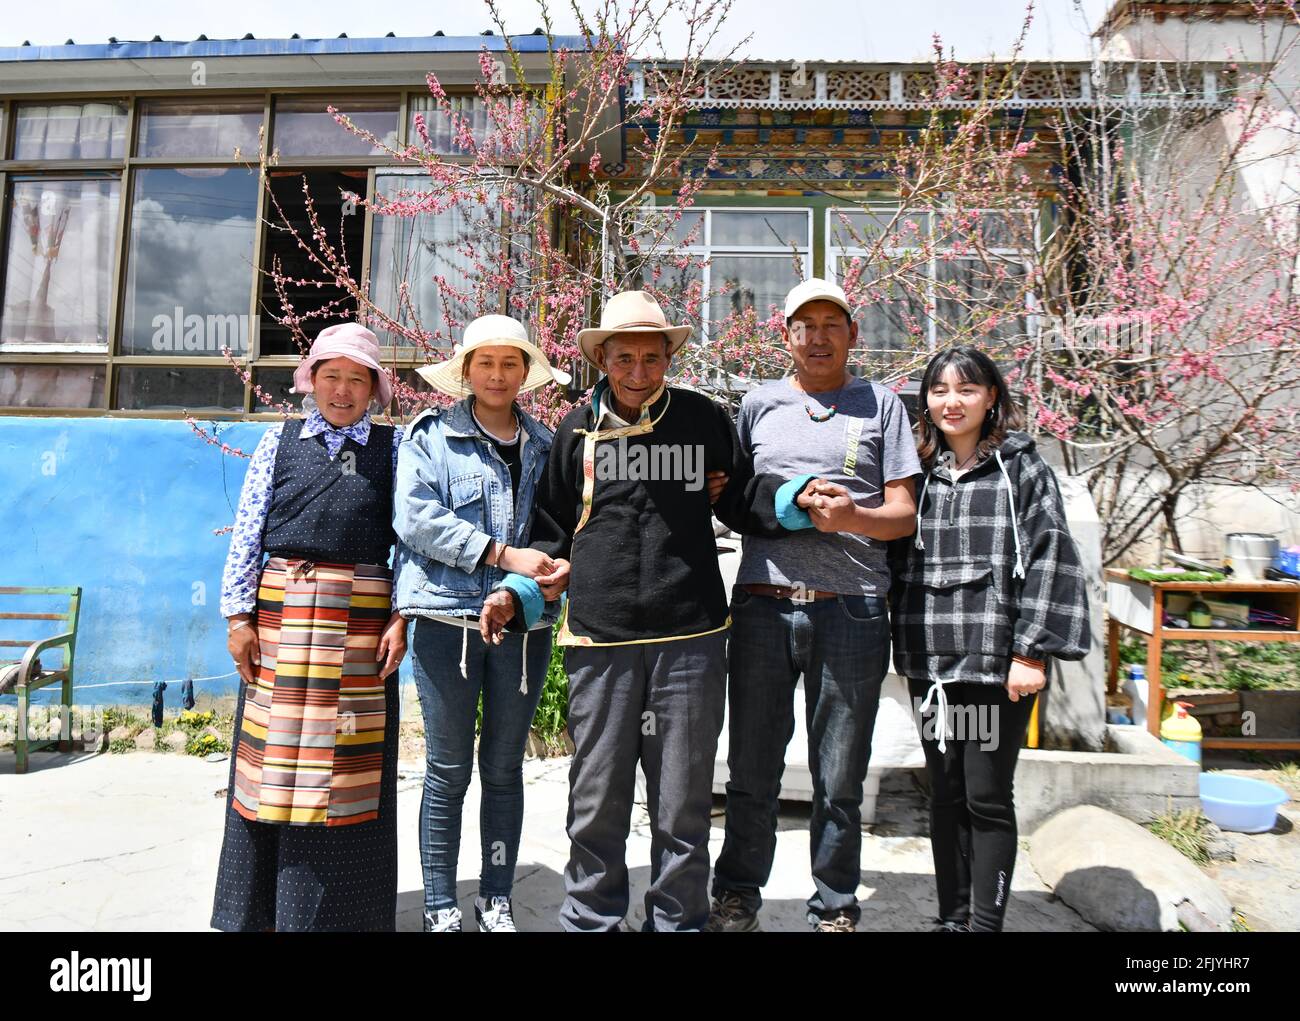 (210427) -- LHASSA, le 27 avril 2021 (Xinhua) -- Lhapu (C) pose une photo de groupe avec les membres de sa famille dans le village de La du comté de Dagze à Lhassa, dans la région autonome du Tibet du sud-ouest de la Chine, le 25 avril 2021. Né en 1938, Lhapu a travaillé comme serf avant la réforme démocratique au Tibet en 1959, qui a aboli son servage féodal sous la théocratie. « dans le cadre des outils de production, nous avons juste fait ce que le seigneur nous avait demandé de faire, et nous avons même été interdits de parler haut en fort », a rappelé Lhapu sa vie dans le passé, ajoutant que les enfants n'avaient pas de nourriture et de vêtements garantis. Après la réforme démocratique, grande cha Banque D'Images